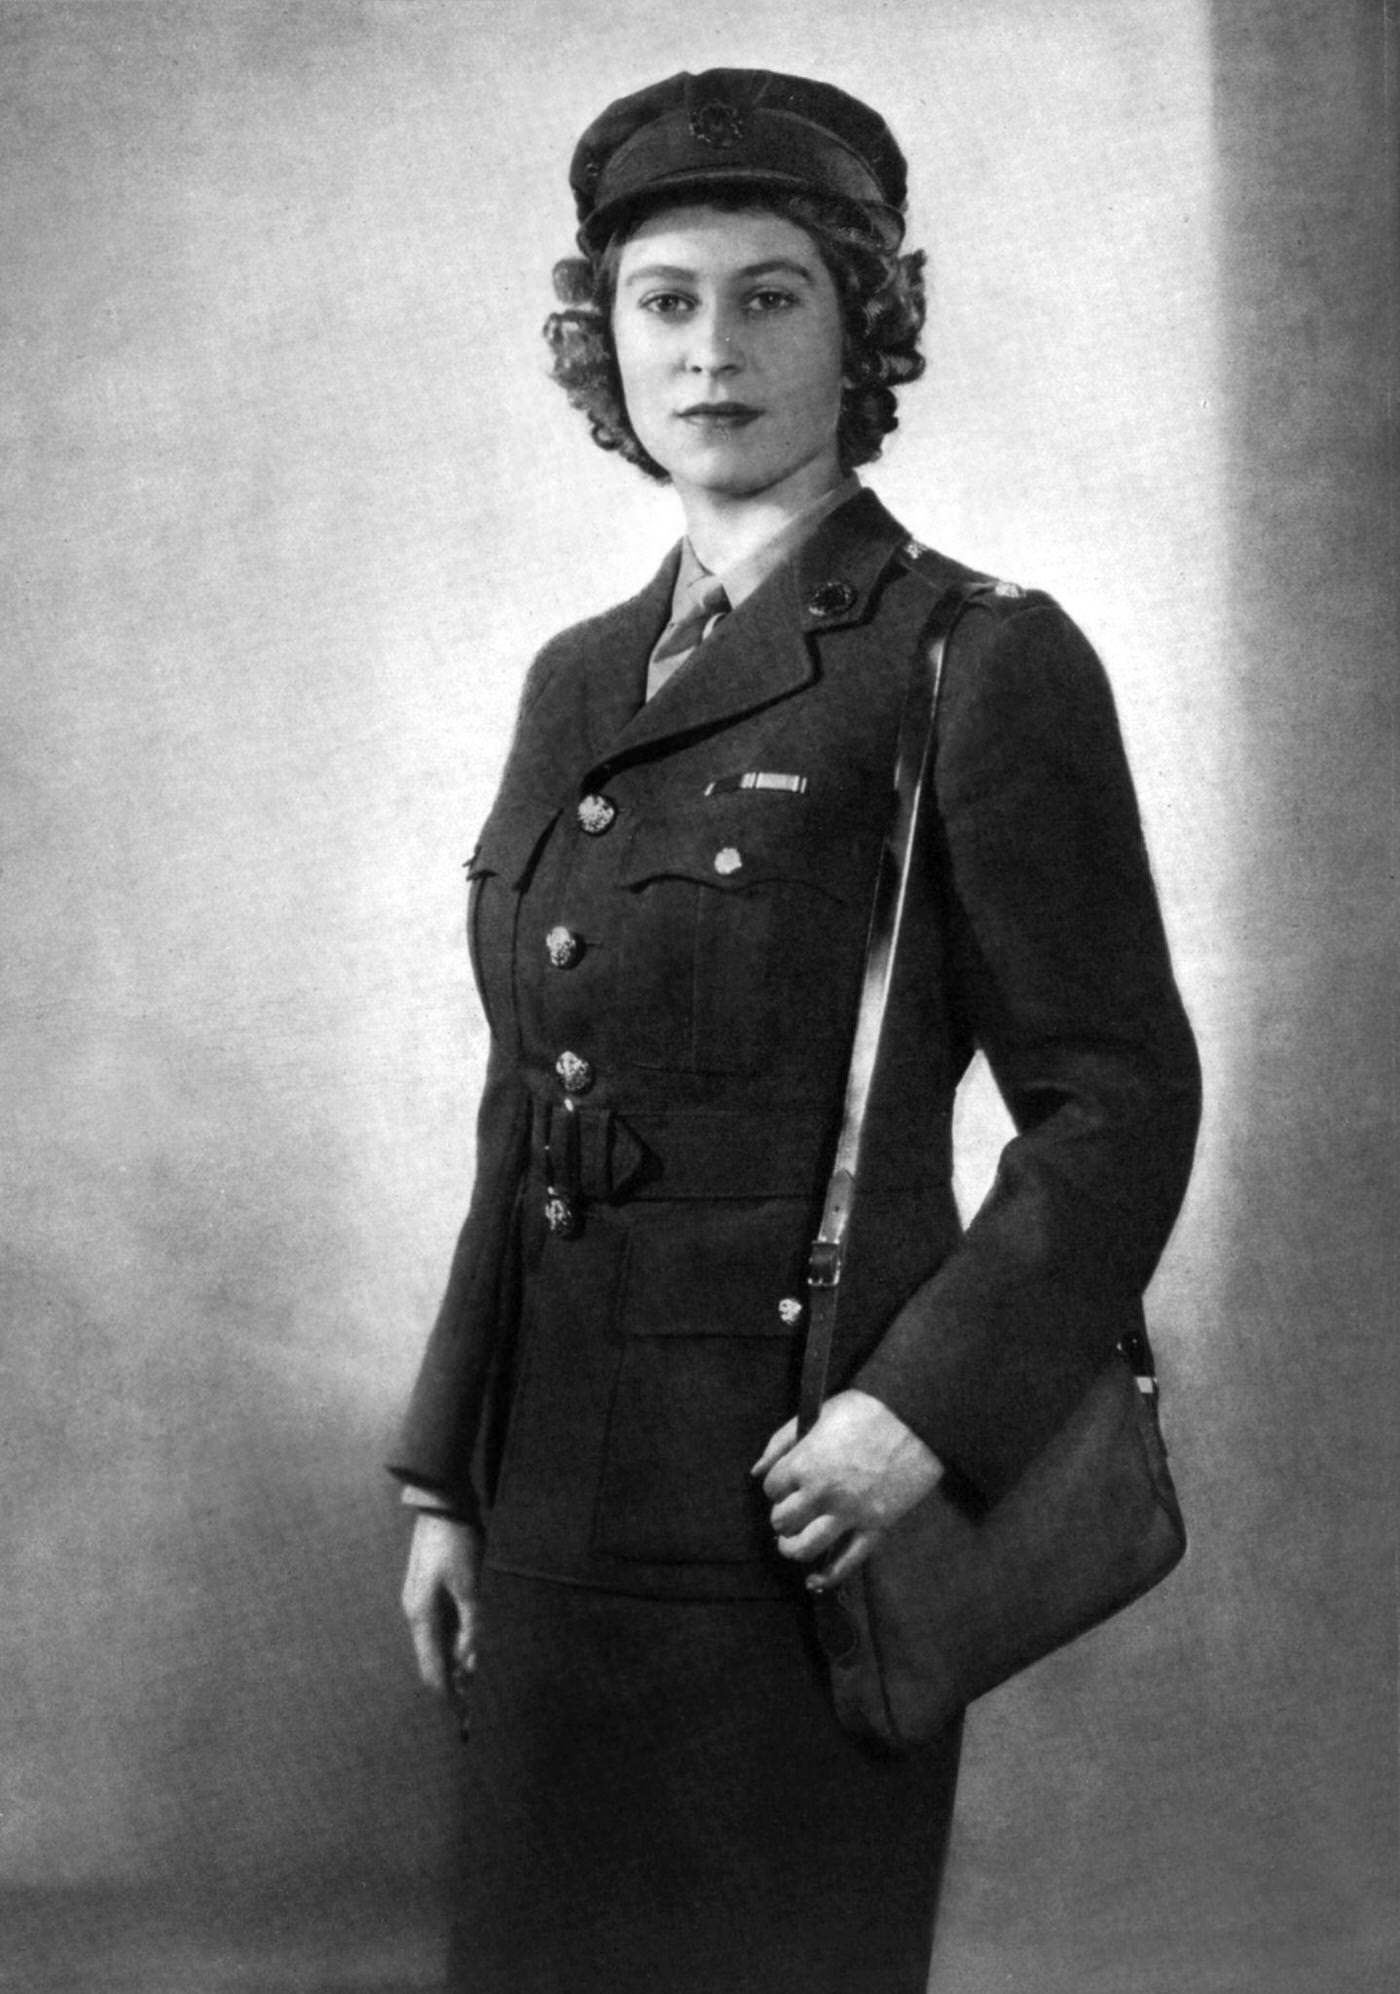 Princess Elizabeth as second subaltern in ATS, 1945